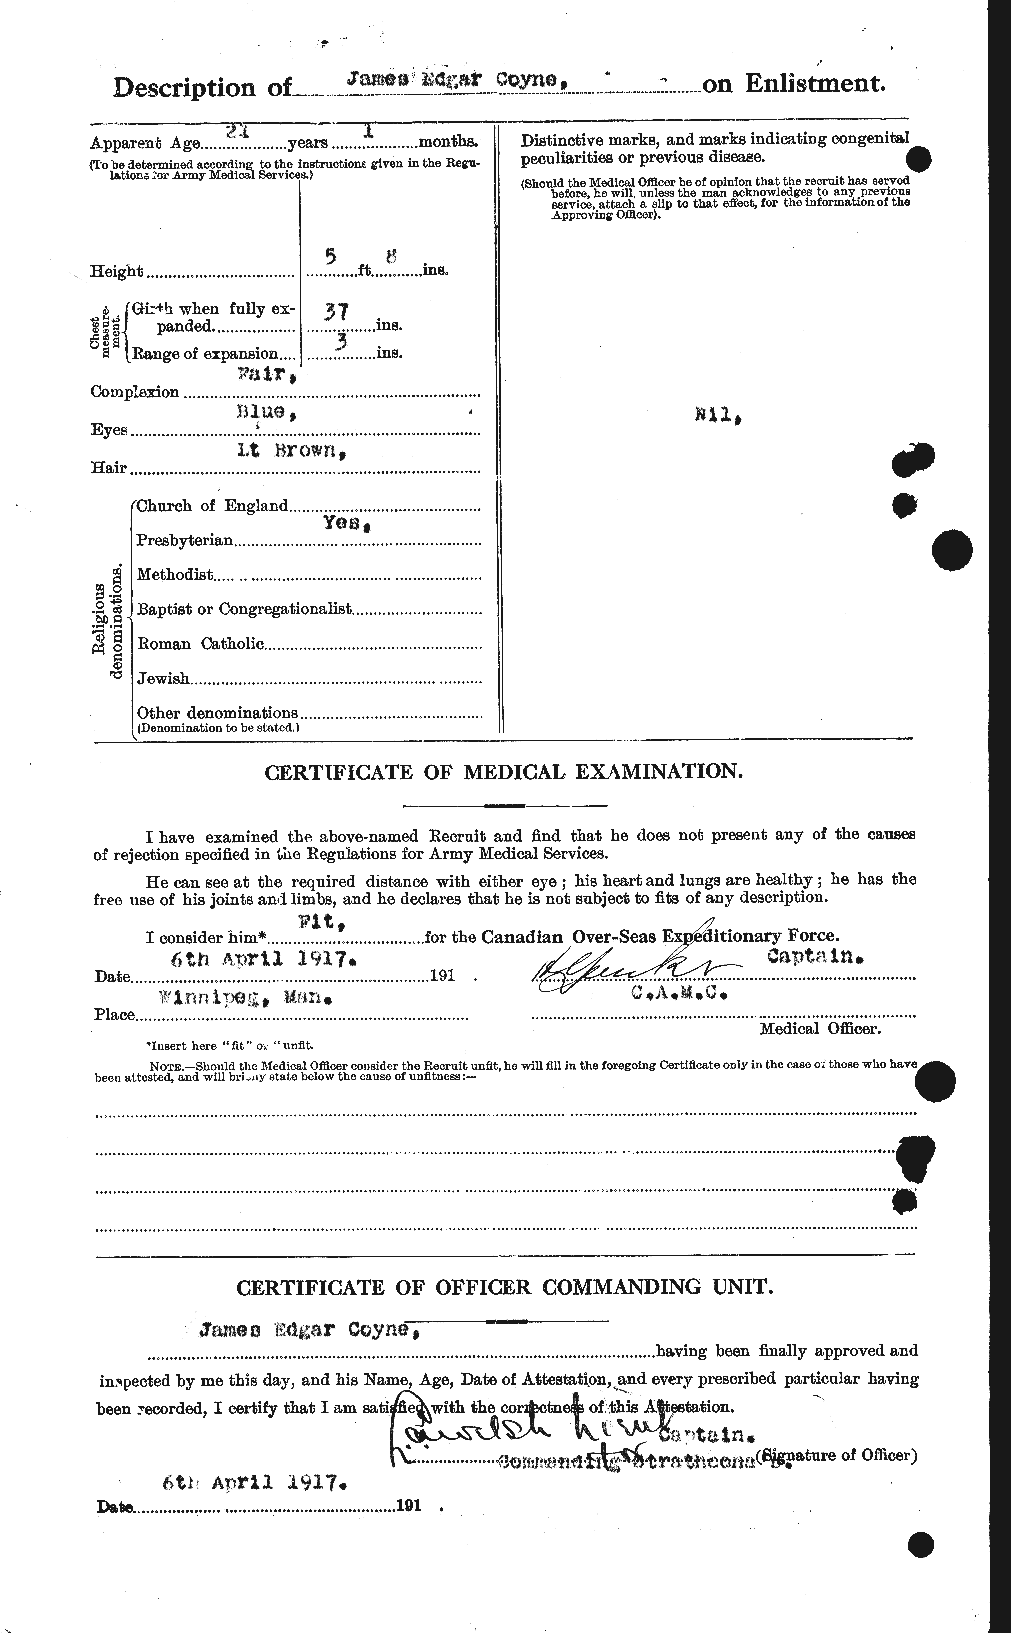 Dossiers du Personnel de la Première Guerre mondiale - CEC 062321b